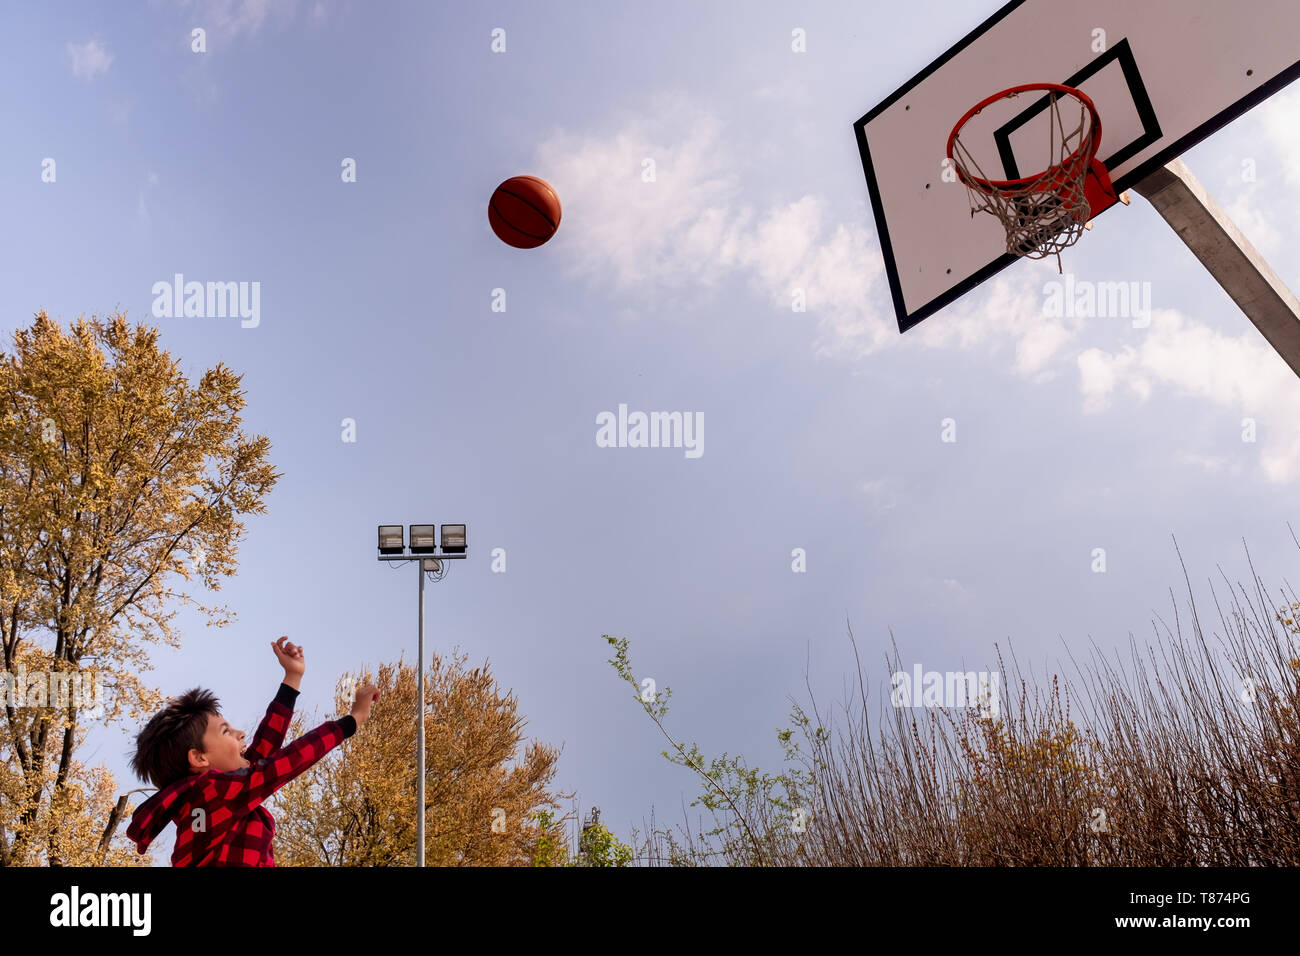 Körper Teil der dynamischen jungen Jungen mit erhobenen Armen schießen einen Basketball, horizontal Komposition, kopieren Raum Stockfoto